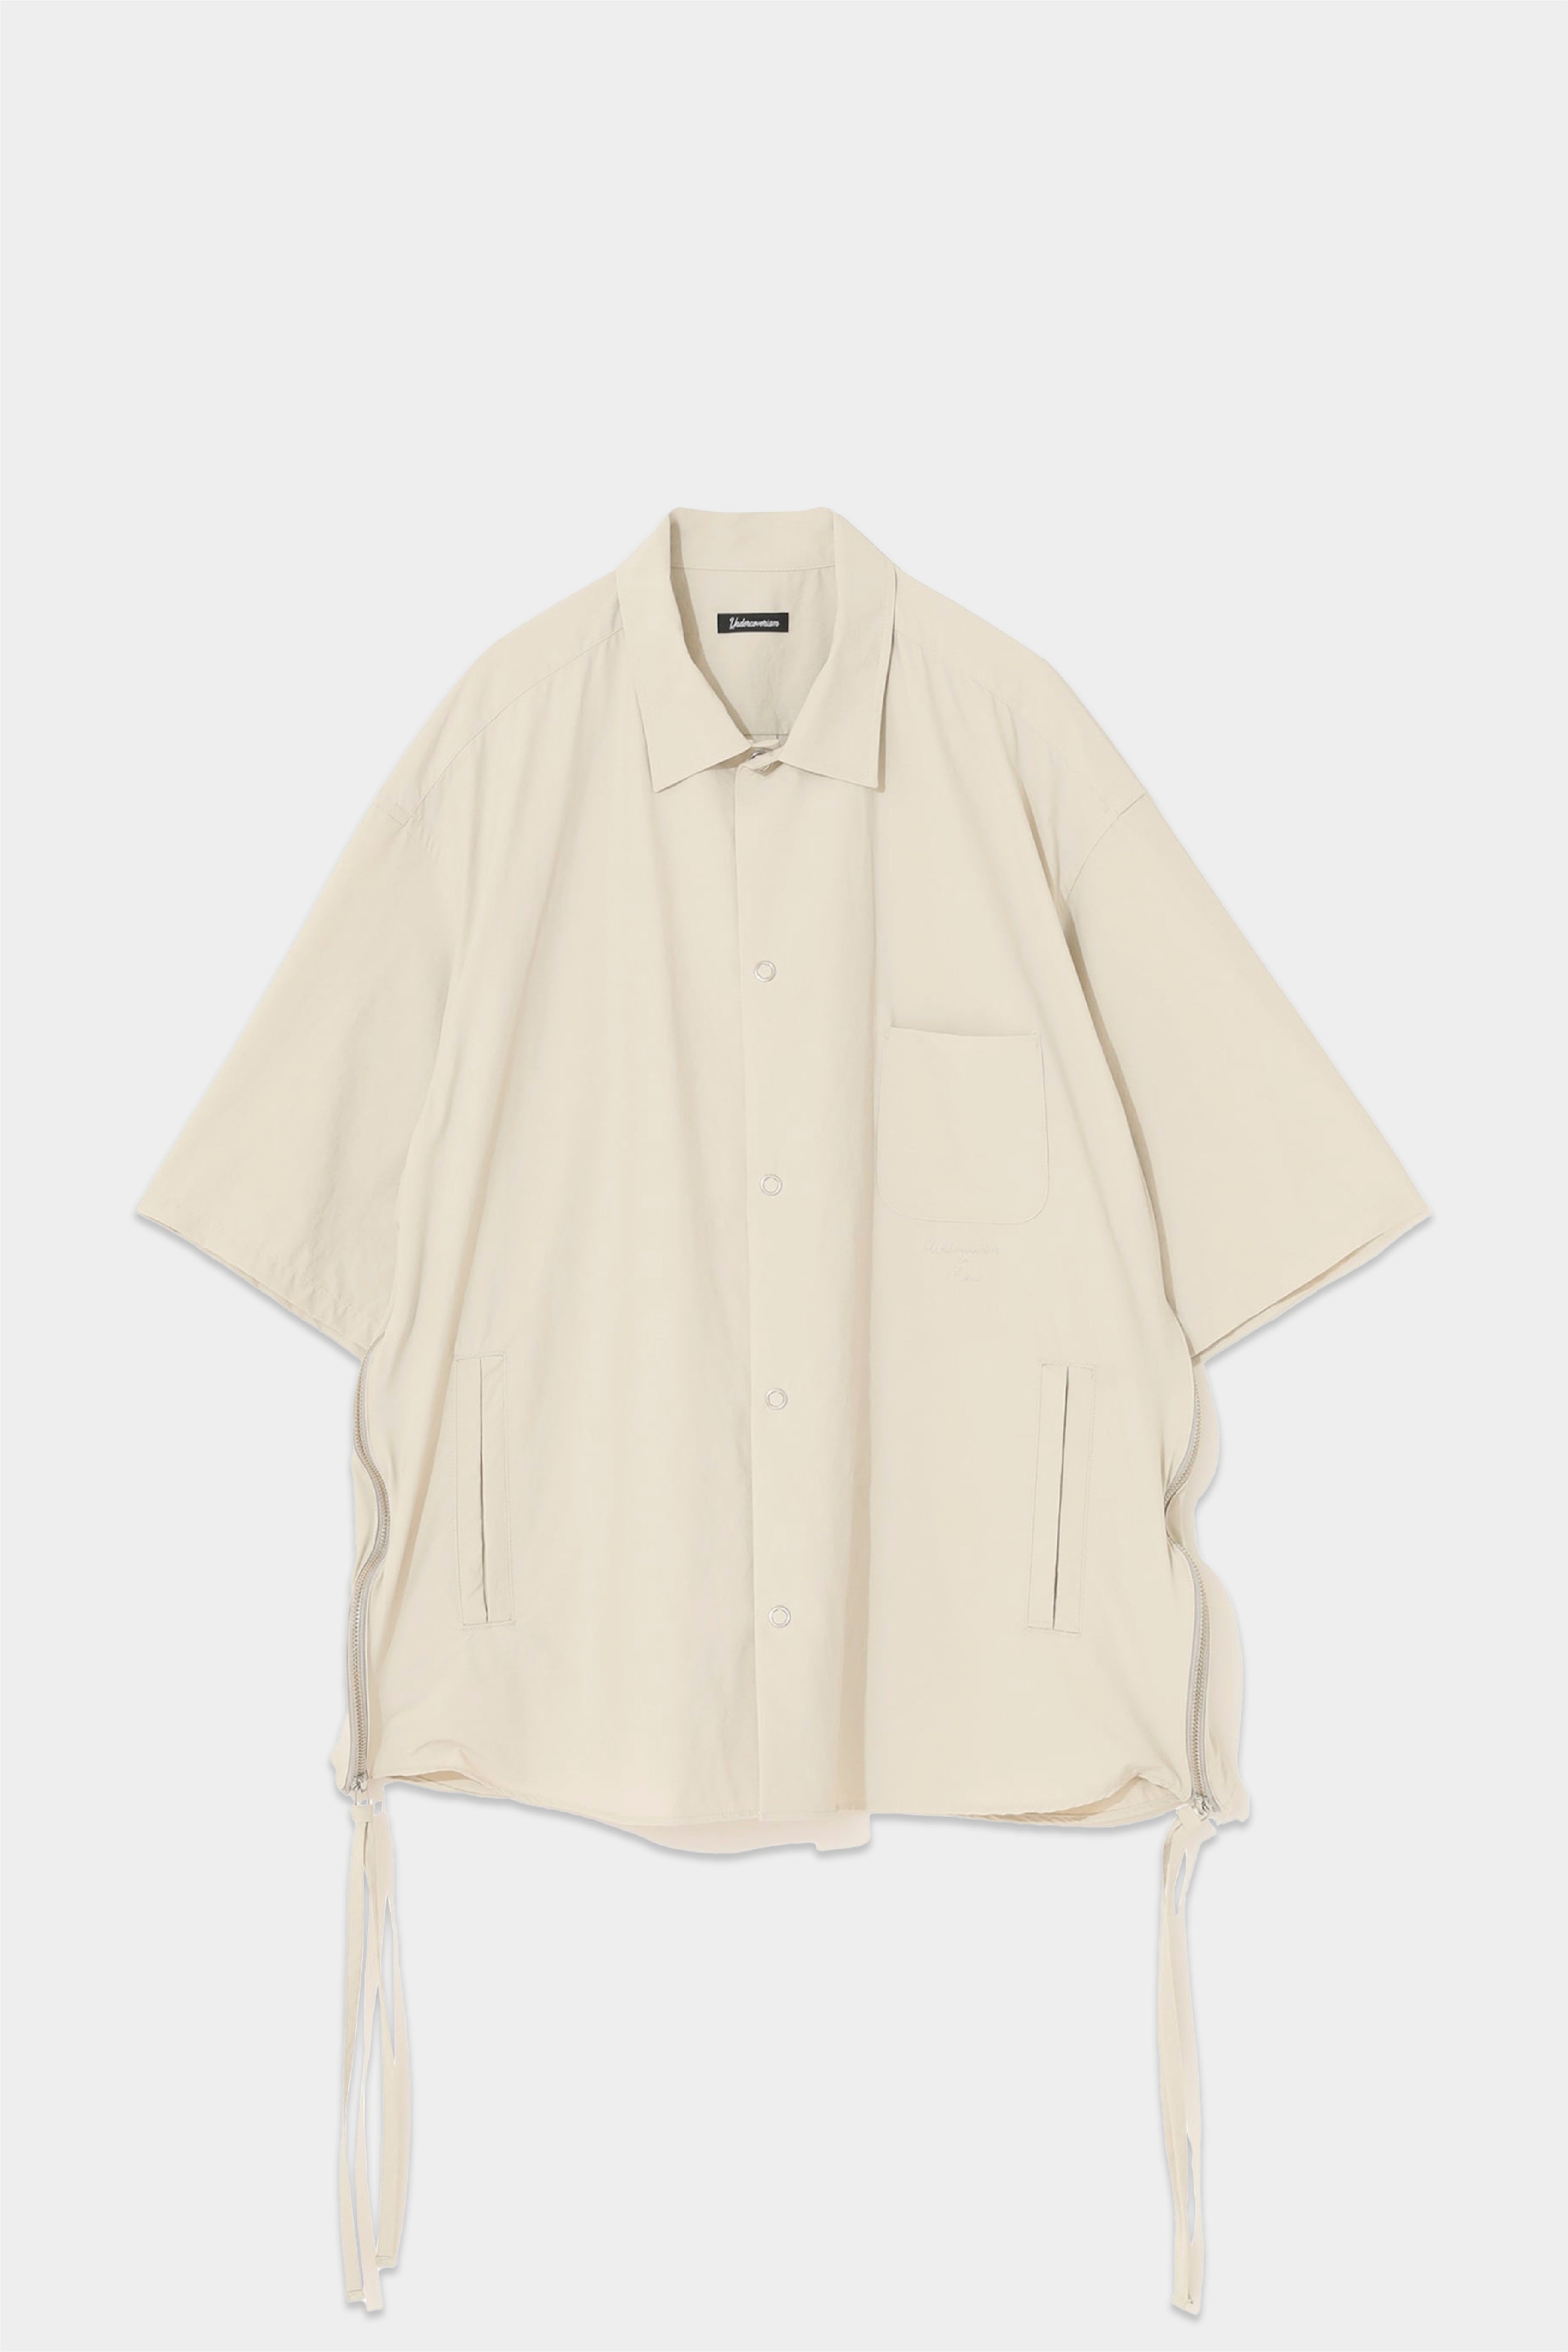 Selectshop FRAME - UNDERCOVERISM Shirt Shirt Concept Store Dubai